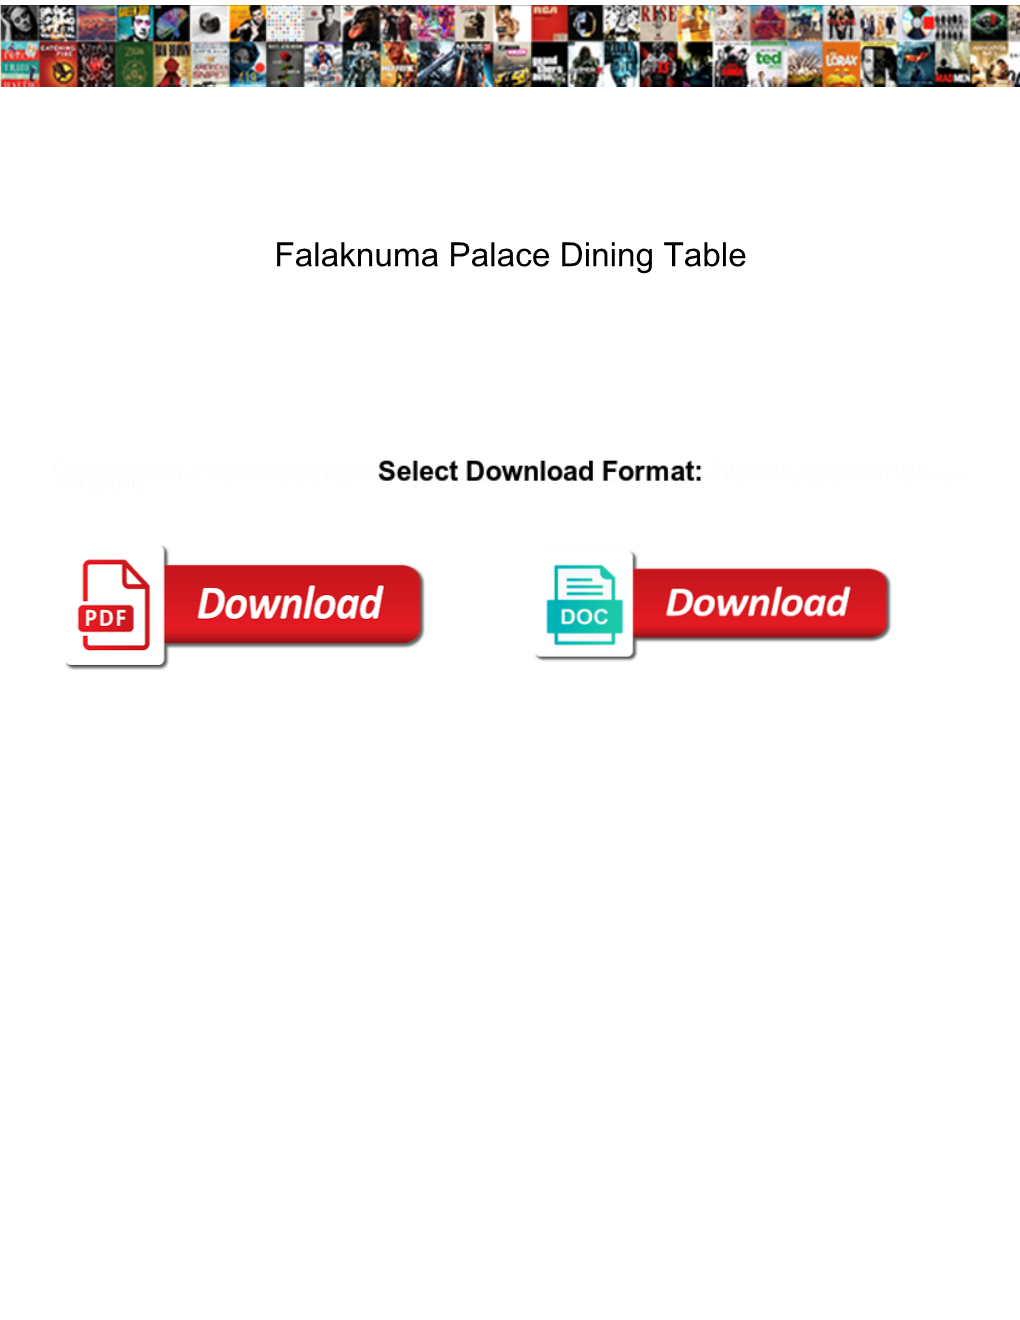 Falaknuma Palace Dining Table